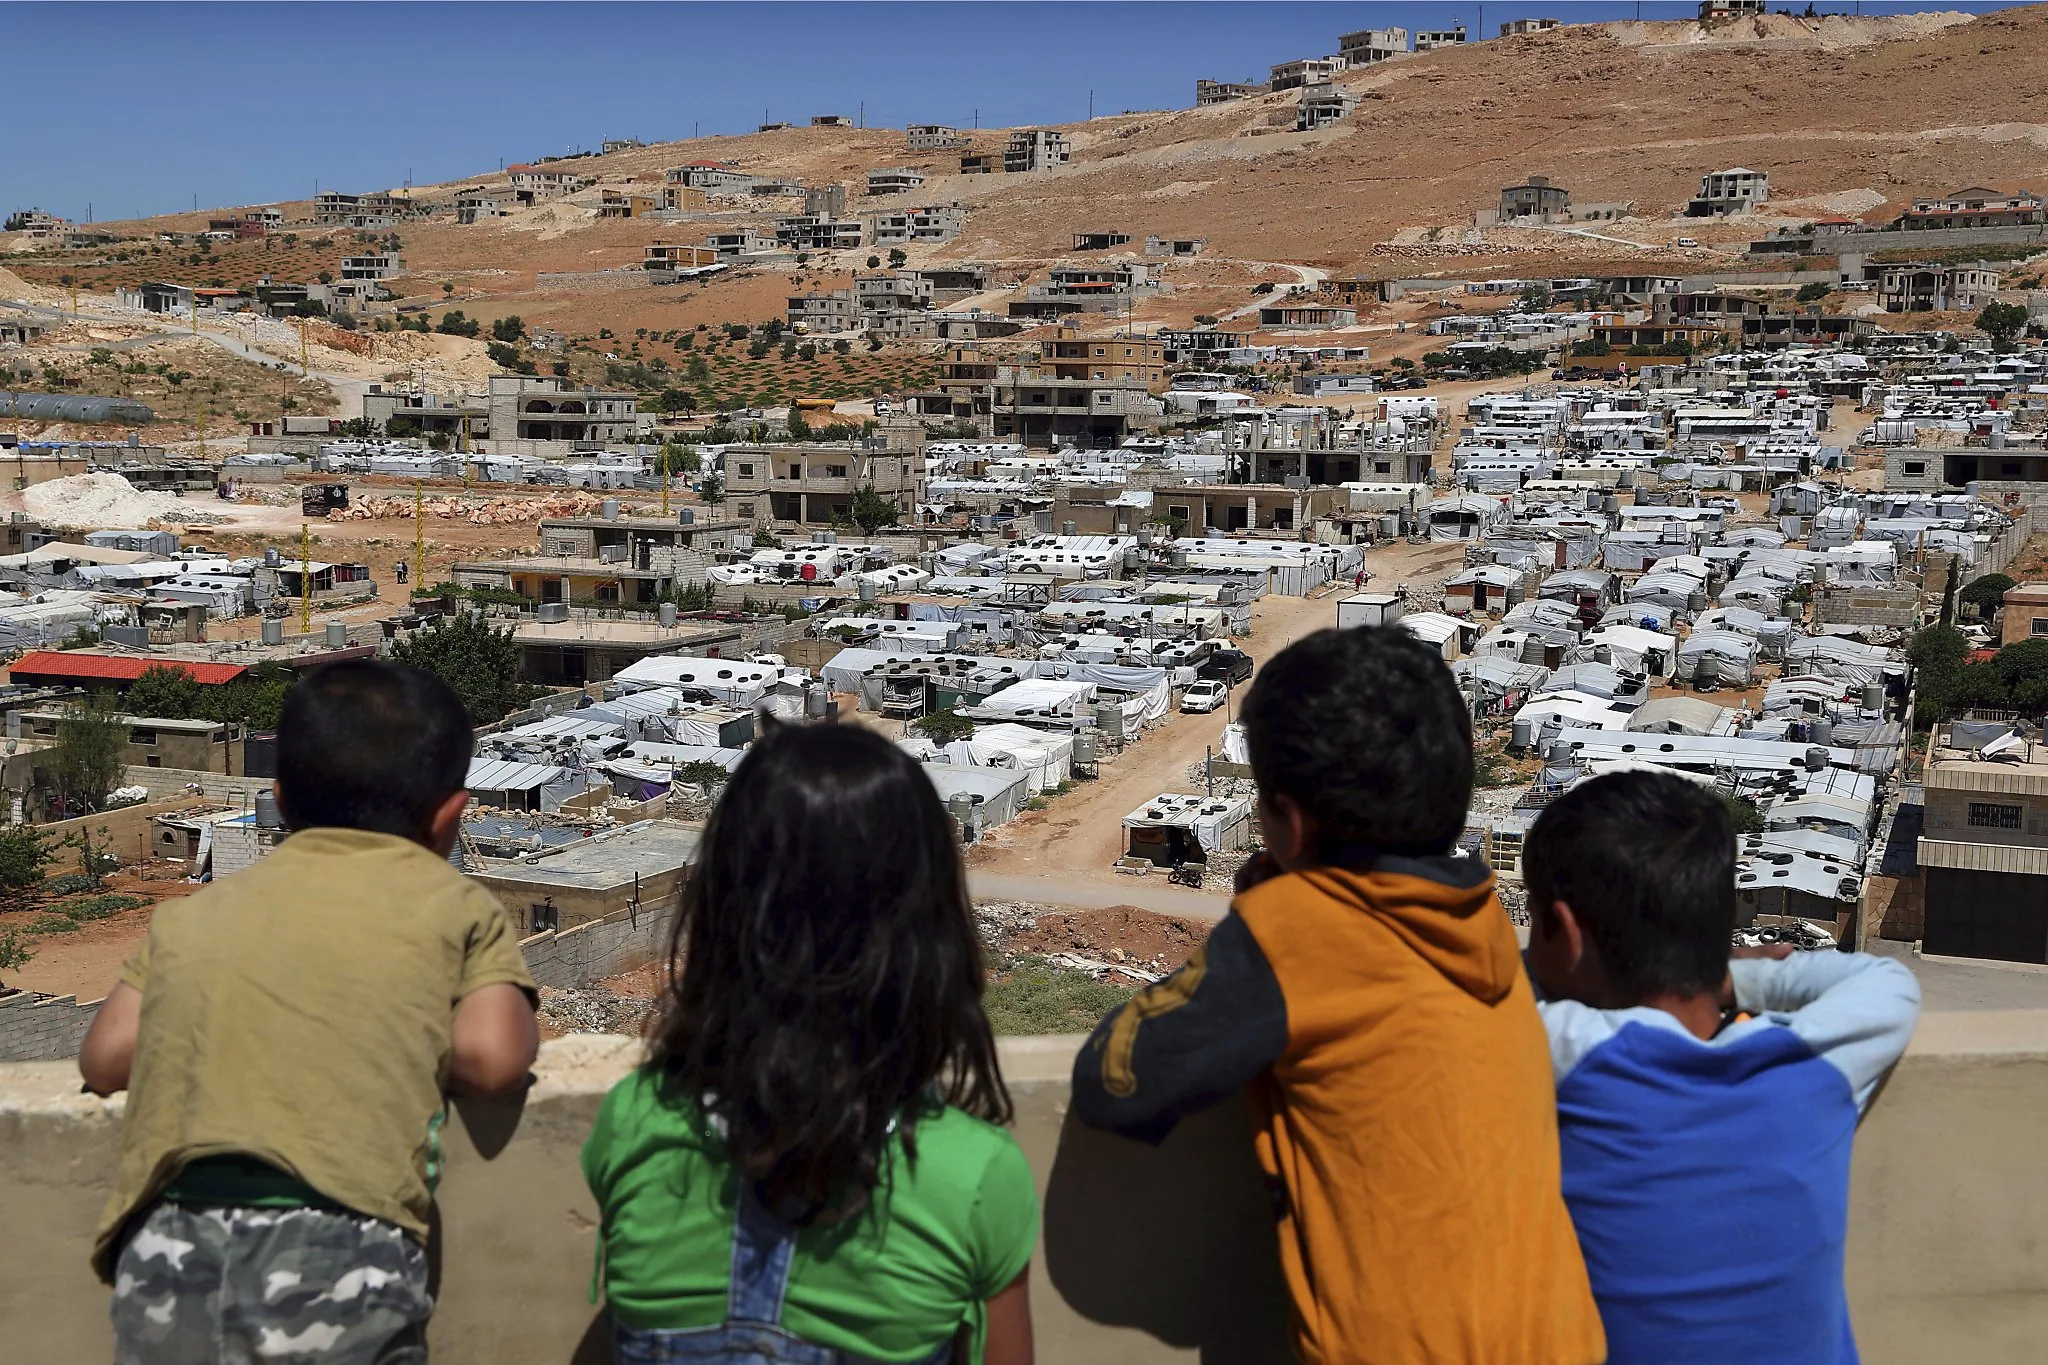 مخابرات لبنان تمنع شبكات الإنترنت ضمن مخيمات اللاجئين السوريين وتهددهم